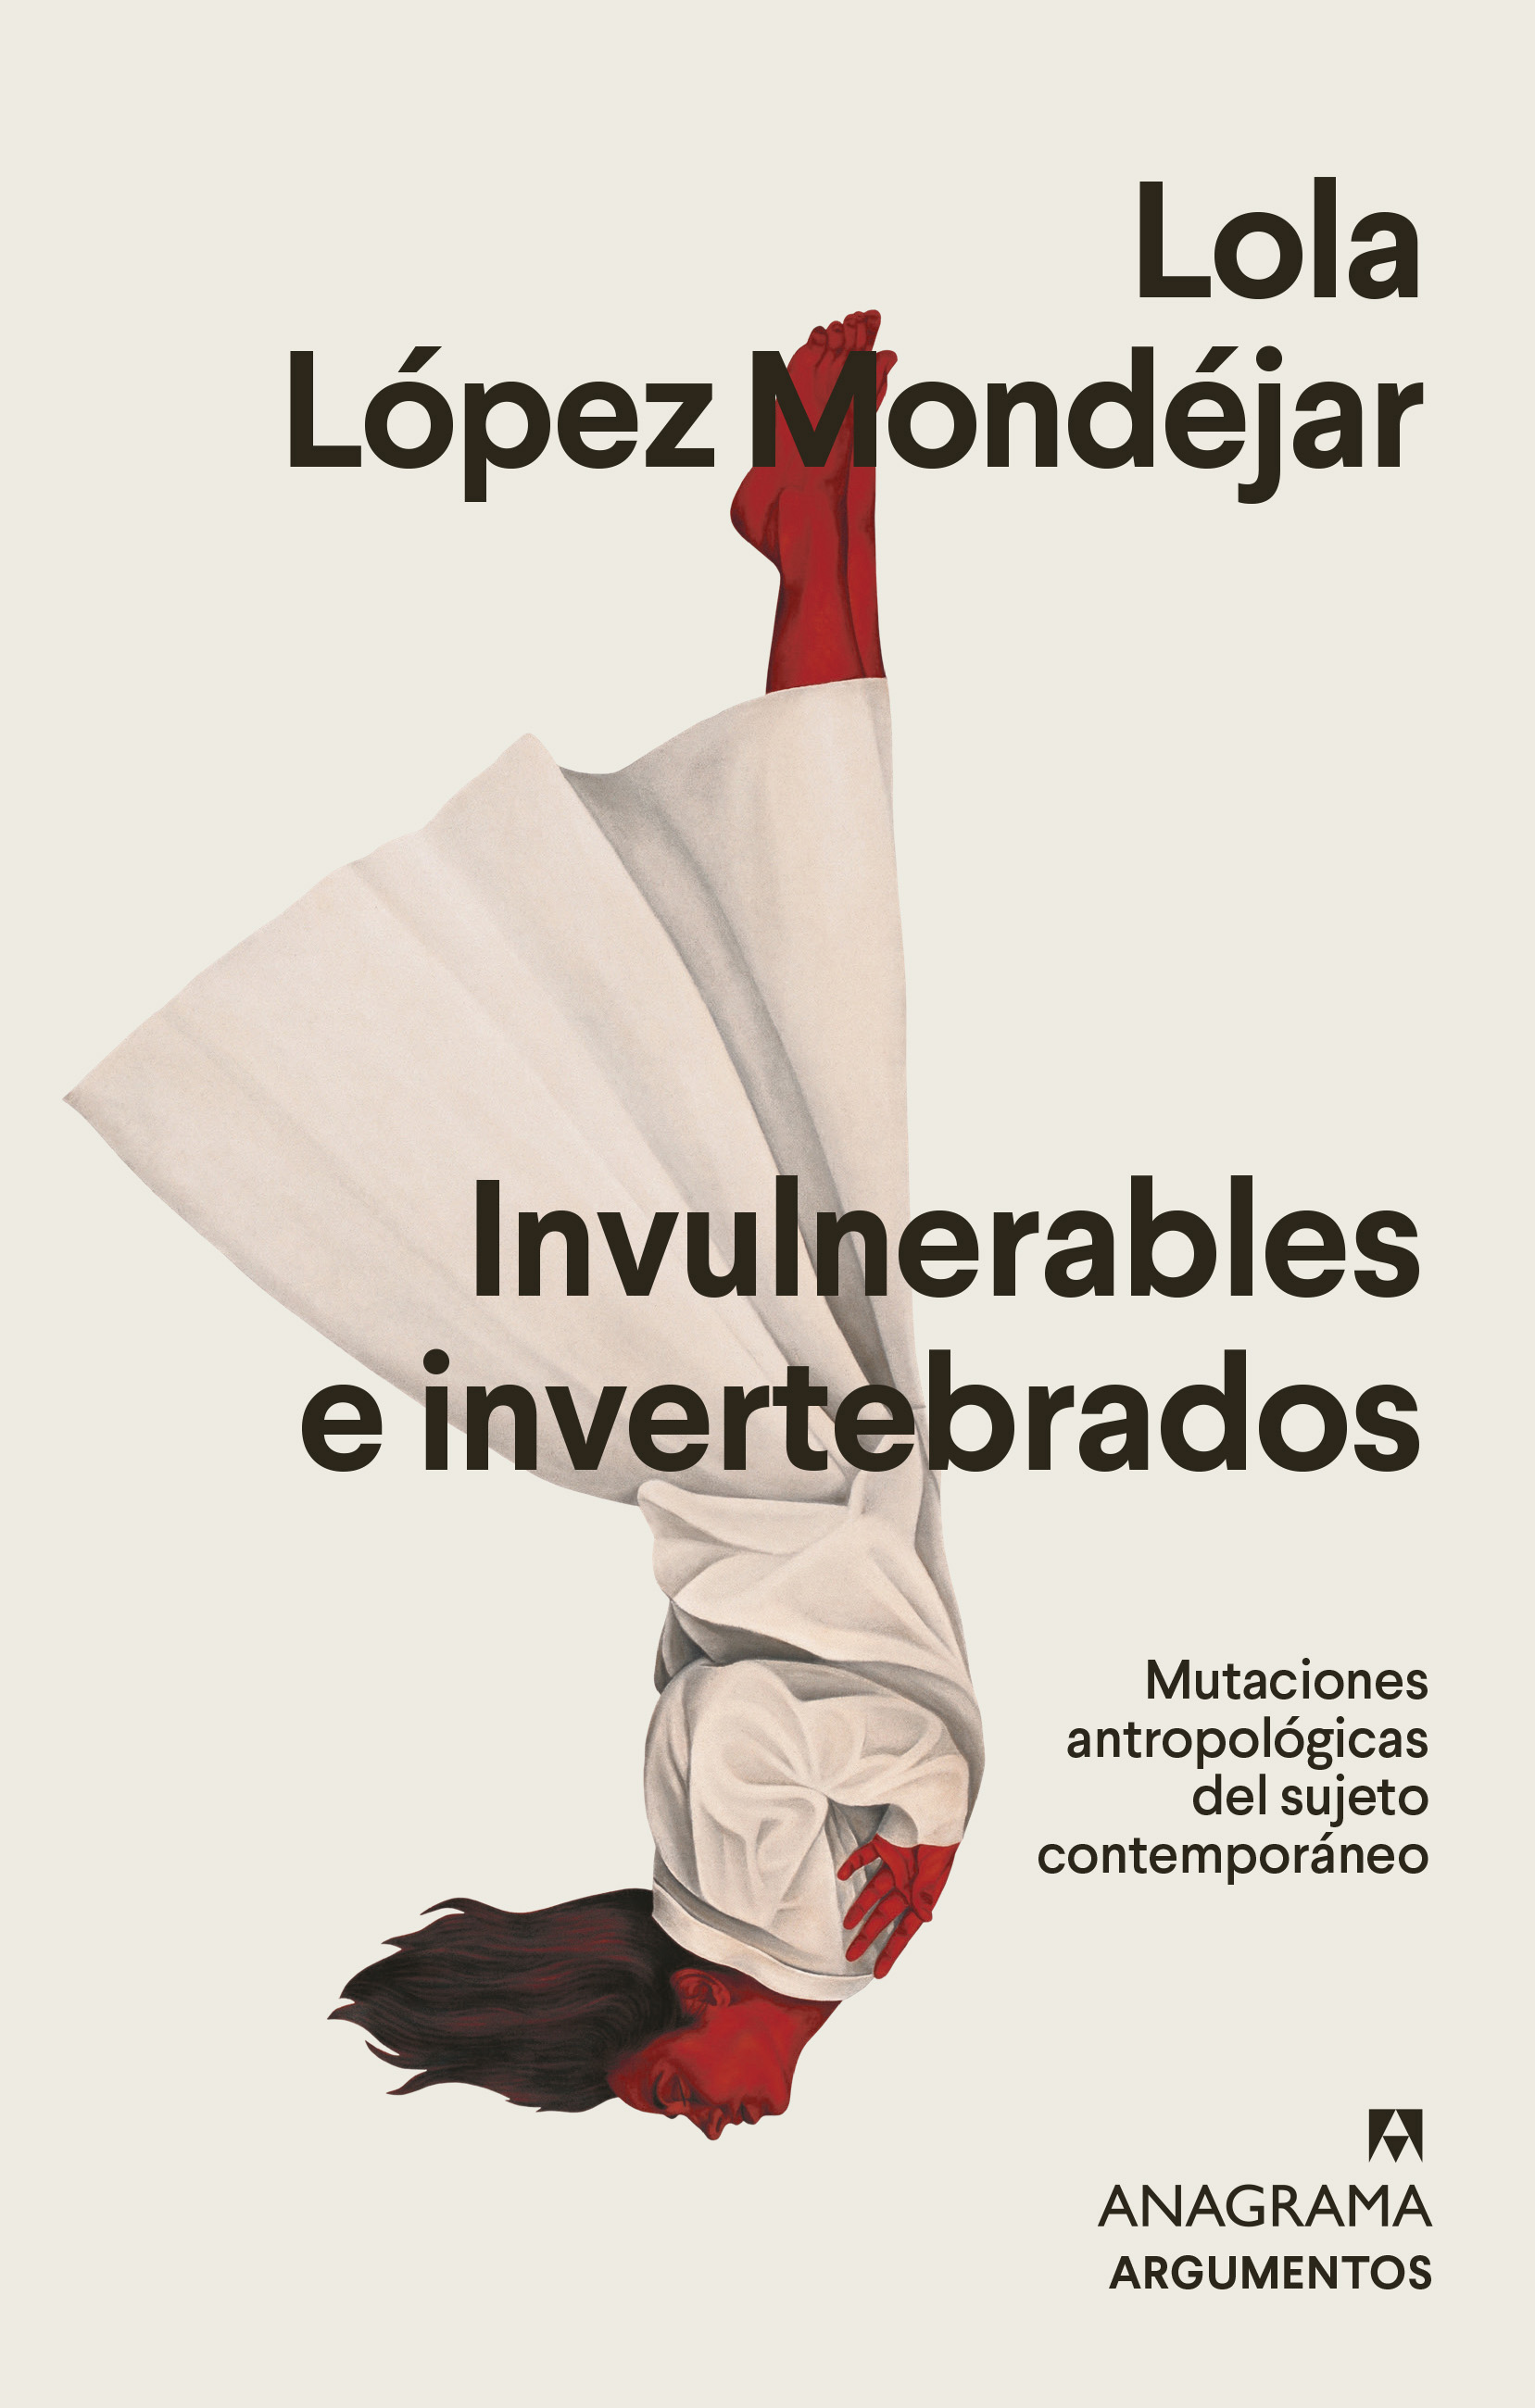 Presentación del libro 'Invulnerables e invertebrados' Lola López Mondéjar. 511